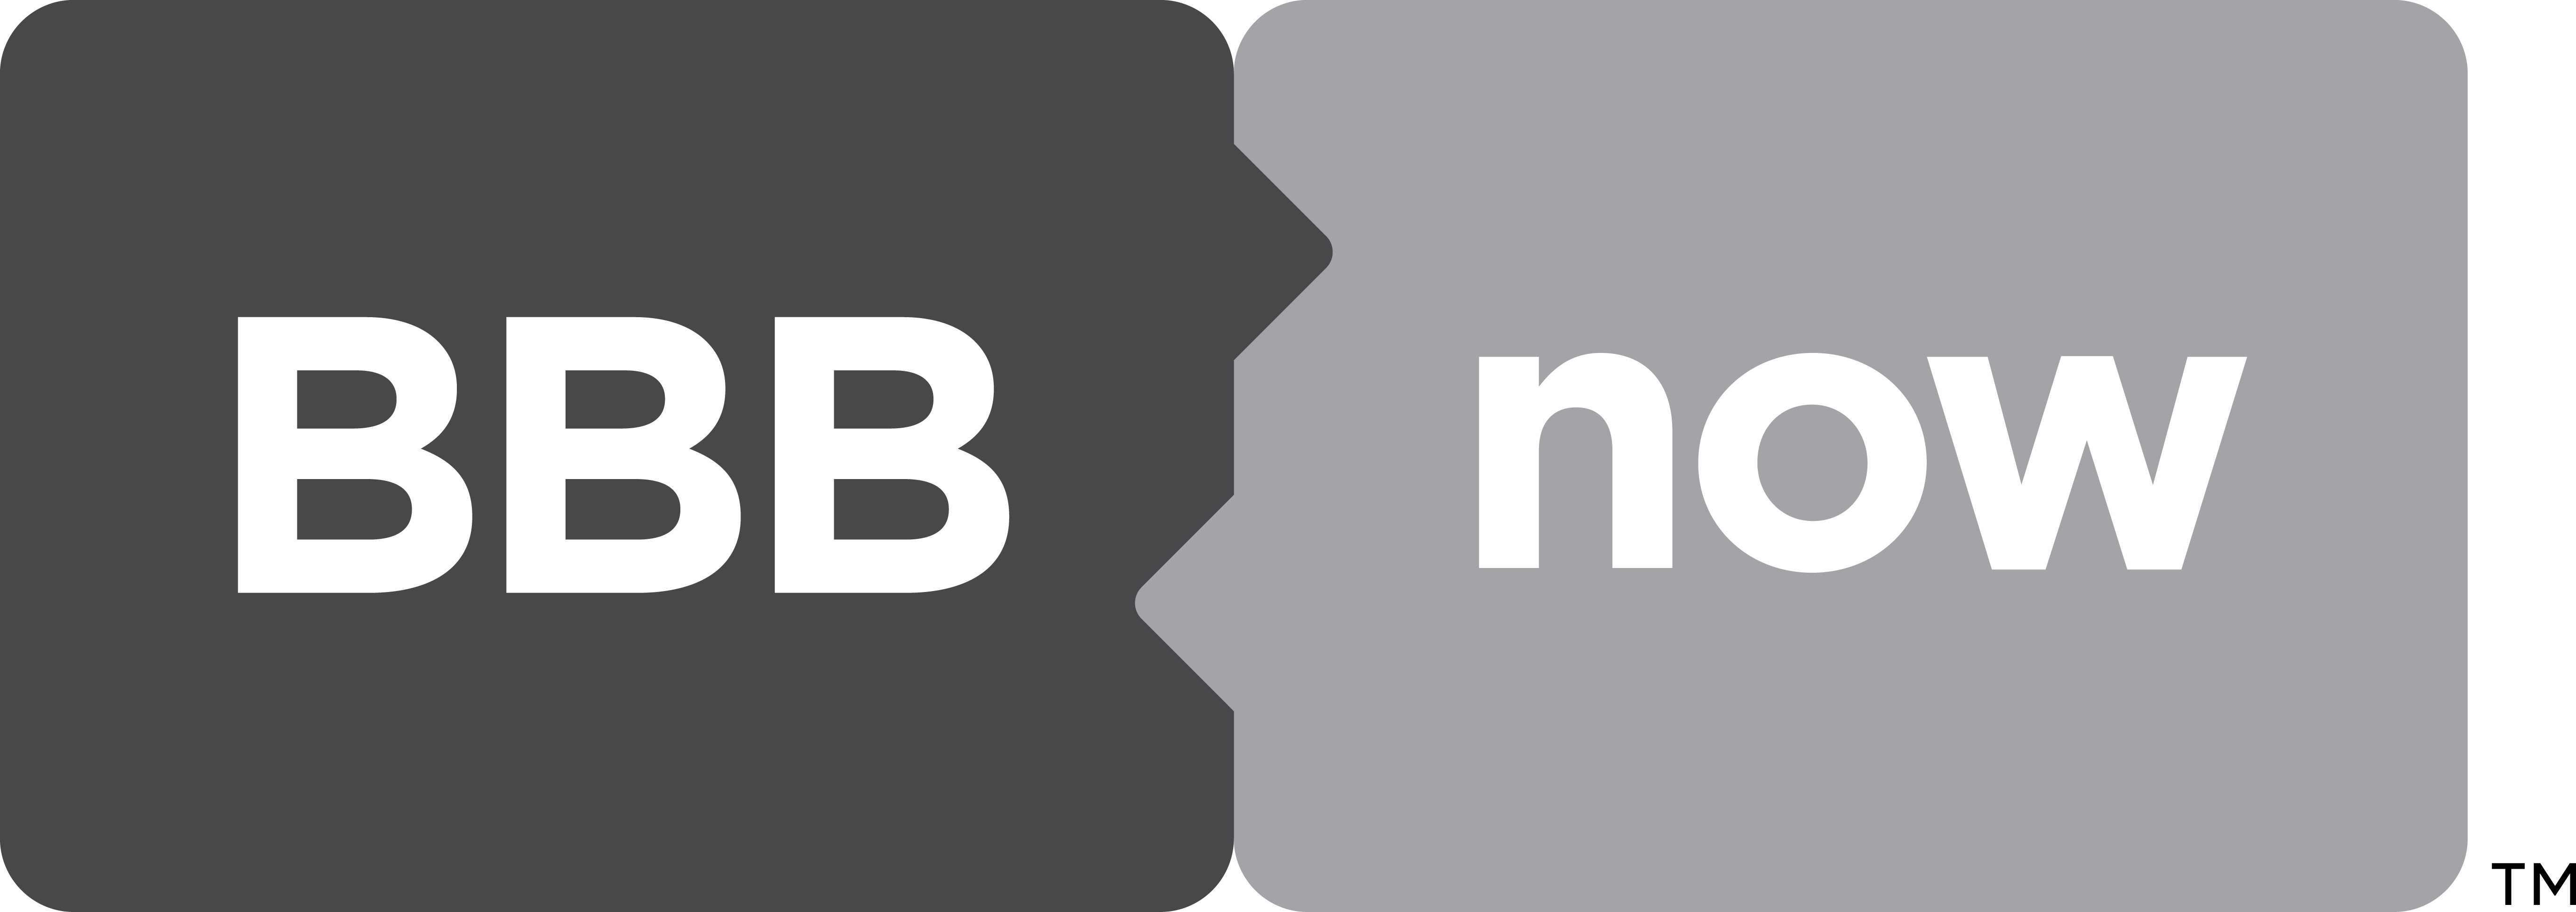 Better Business Bureau Logo - Bbb (5475x1938), Png Download